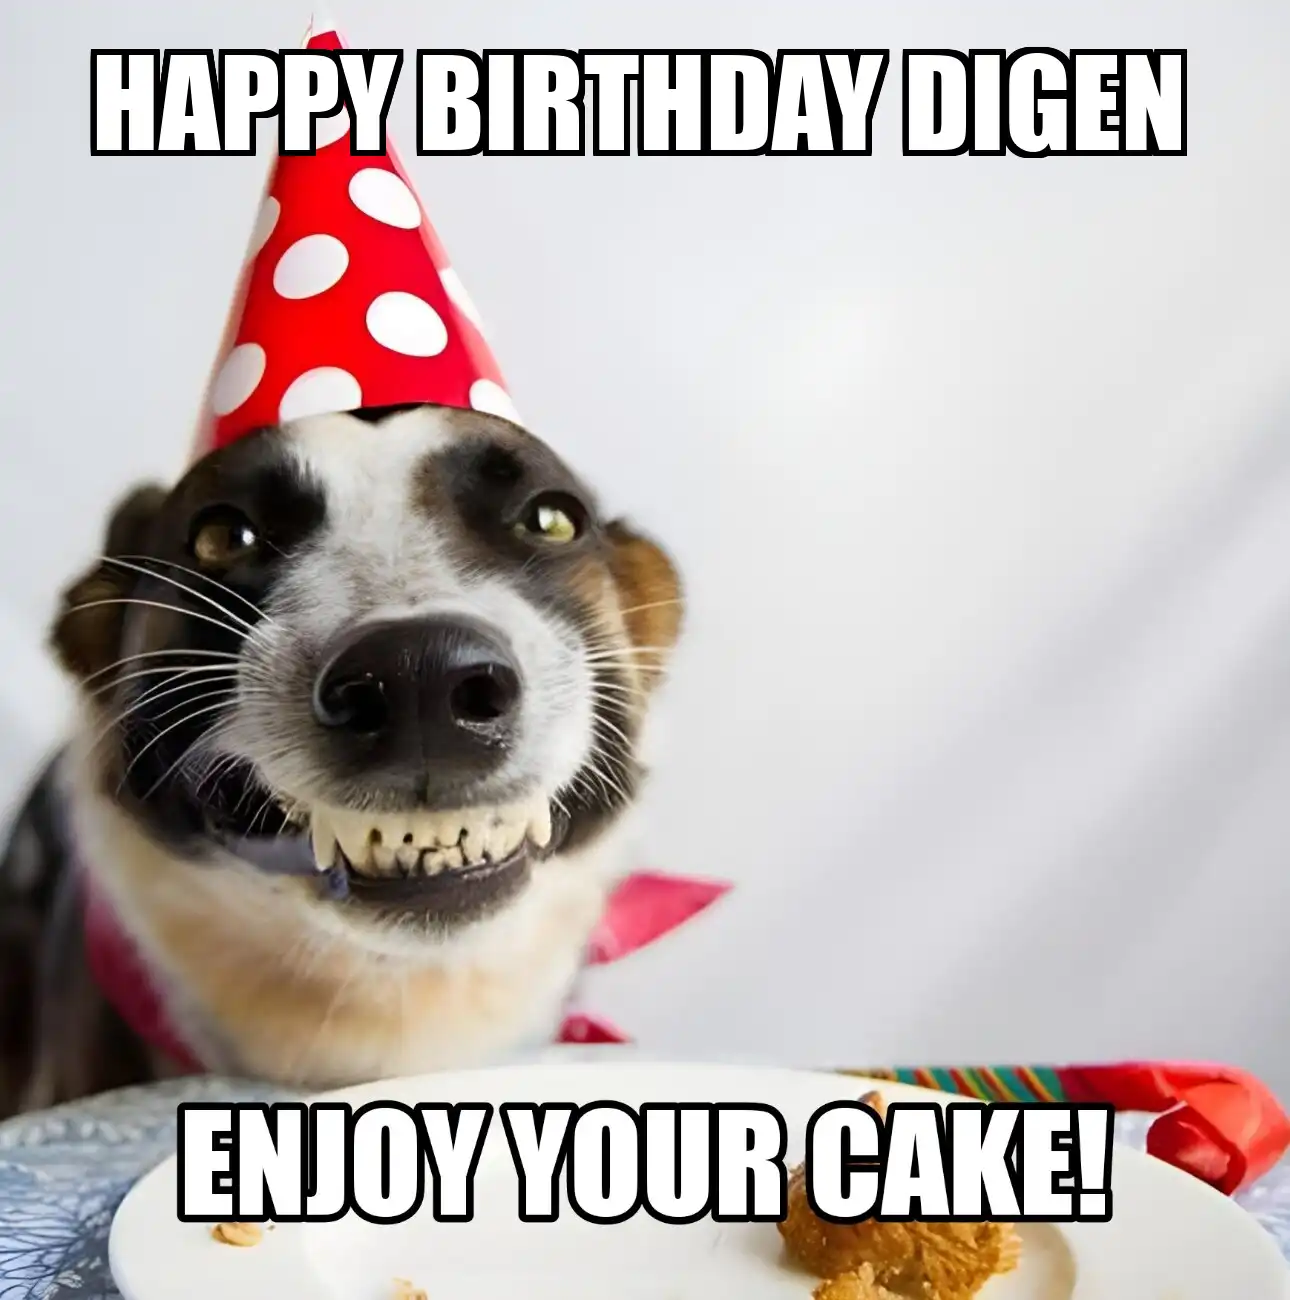 Happy Birthday Digen Enjoy Your Cake Dog Meme